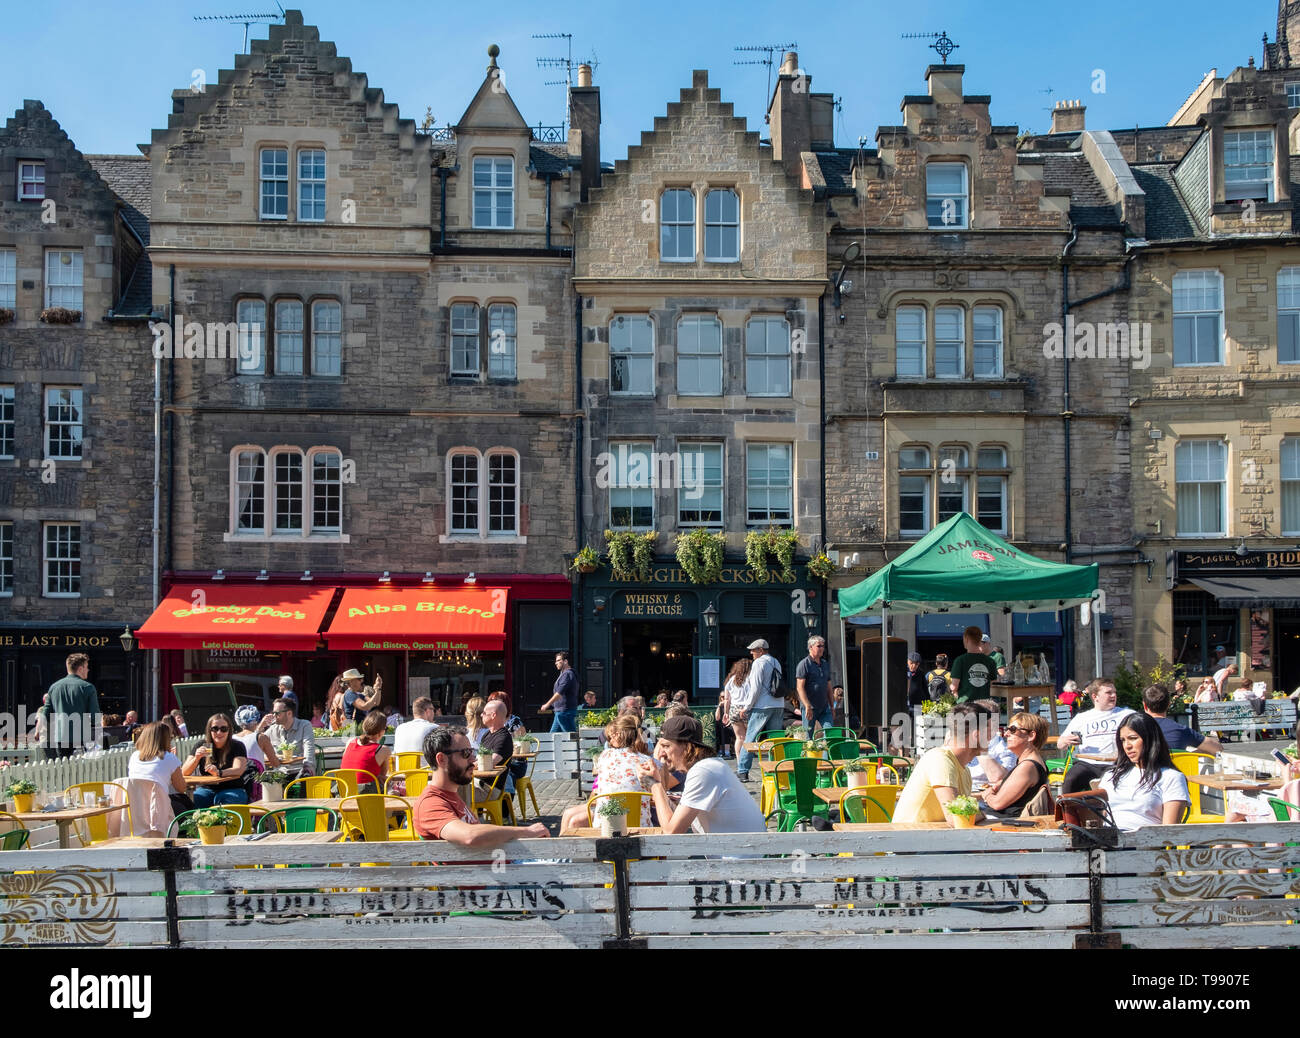 Beaucoup de gens boire ou manger à l'extérieur dans le soleil chaud dans les bars et cafés sur Grassmarket dans la vieille ville d'Édimbourg, Écosse, Royaume-Uni Banque D'Images